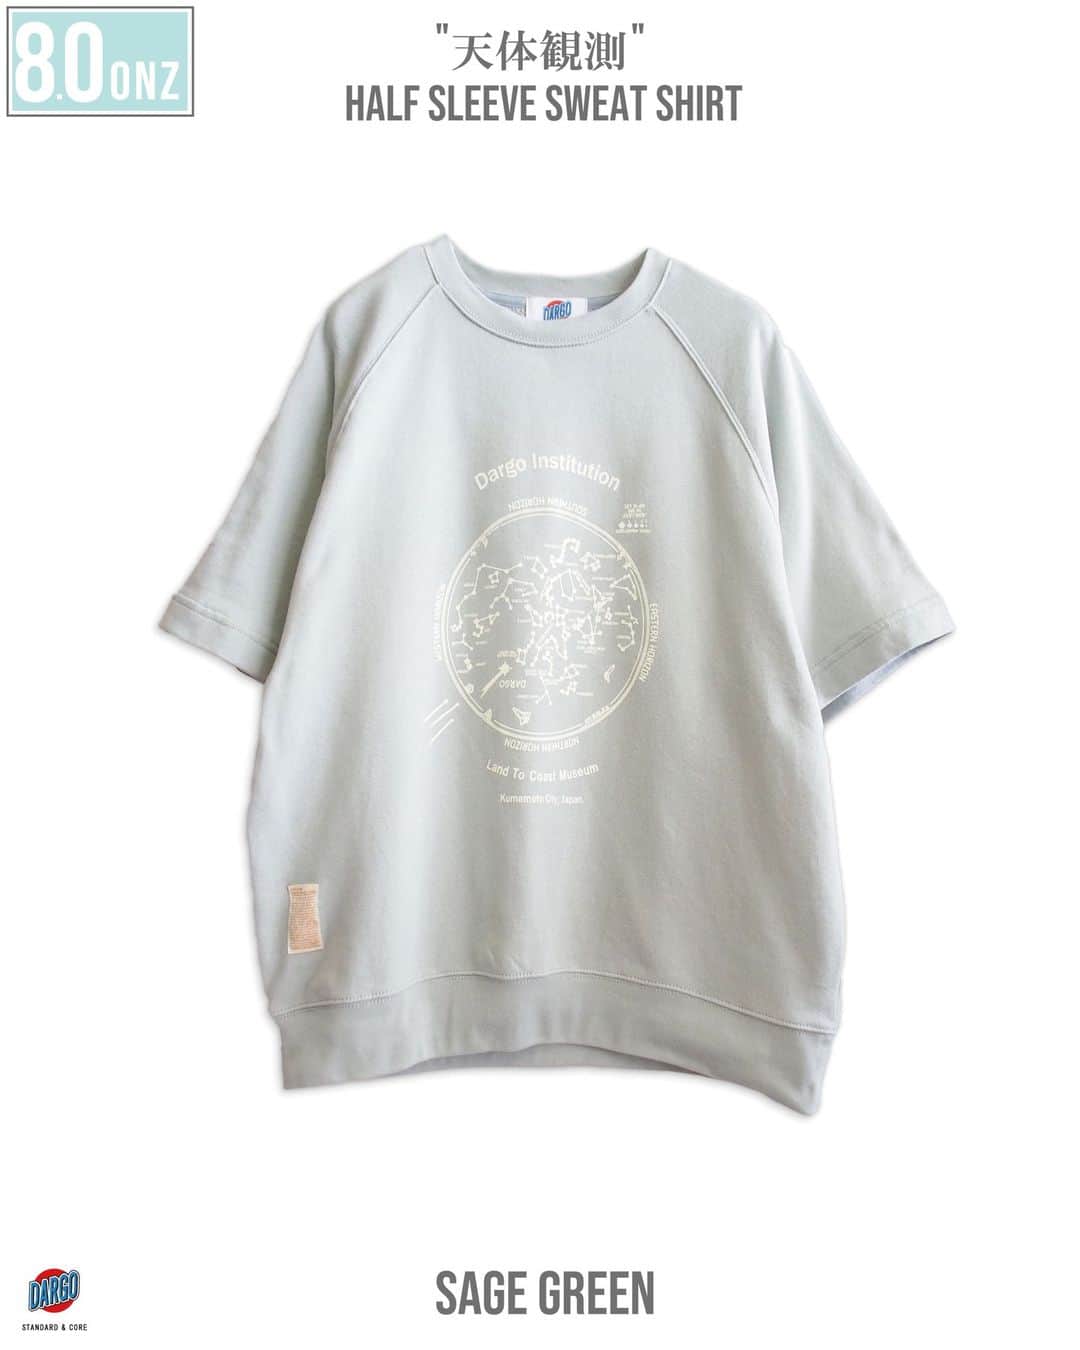 DARGO T-shirt &Sign Artのインスタグラム：「夏の大冒険感あふれる天体観測を イメージした100%コットンのハーフスリーブスウェットとキッズTシャツのご紹介です。 　 　 デザインソースは実際に存在した 90年代頃のアメリカのプラネタリウムのお土産Tシャツです★ 　 　 ヴィンテージスウェットのような織り方で 製法した半袖スウェットを使用した、 シルクスクリーン スウェットです。  素材は100％コットンで、 「トンプキン編み」にて製法しています。  通常のスウェット生地の編み機と比べ、 編み上げる時間を 約10倍遅く しています。  時間をかけて編み上げることで、 空気がたっぷり糸に含まれるため 着心地はふっくら 柔らかい仕上がりに。  そんな50s～60sな雰囲気を感じれる クラシックな半袖スウェットに 夏の大冒険感あふれる天体観測ロゴを 手刷りでプリントしました。 　 　 キッズTeeも90cm～140㎝まで サイズ展開しています。 コレ着てプラネタリウムに行くのもいいですね！ 　 　 ロマン溢れる プリントTeeで 夏の思い出を沢山つくってください！ 　 　 　 "天体観測" 8onz Half Sleeve Sweat Shirt color：SAGE GREEN, ASH GRAY size：M, L, XL price：7700yen (in tax) material：100% Cotton, 8.0onz Mid Weight. PRE-SHRUNK FIT. 水性インク, シルクスクリーン2版構成 　 　 　 KIDS "天体観測" Mid Weight T-shirt color：NAVY, GREEN size：90cm, 100cm, 110cm, 120cm, 130cm, 140cm price：2750yen (in tax) material：100% Cotton, 5.6onz Mid Weight. PRE-SHRUNK FIT. 水性インク, シルクスクリーン2版構成 　  #dargojapan #dargo2023ss #ダーゴ #アメカジ #シルクスクリーン #tシャツ #プリントtee #天体観測 #熊本 #熊本市 #熊本tシャツ」